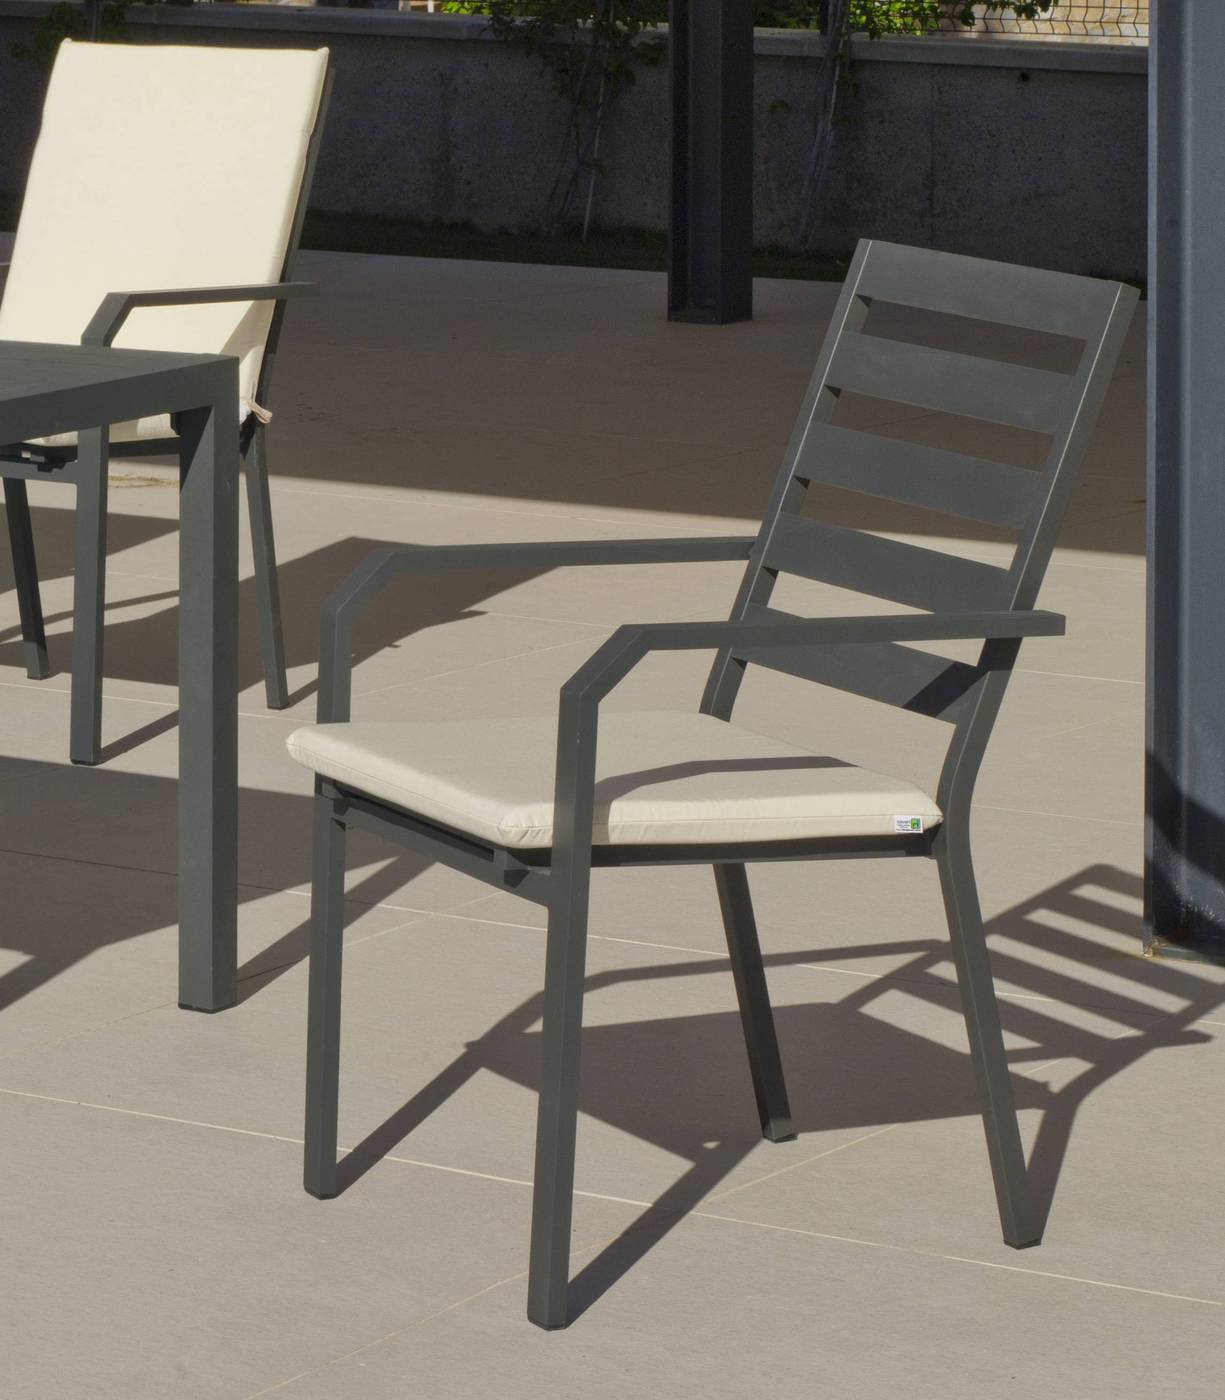 Set Aluminio Brasilia-Caravel 150-6 - Moderno conjunto de aluminio luxe: Mesa de comedor hexagonal de 150 cm. + 6 sillones. Disponible en color blanco y antracita.